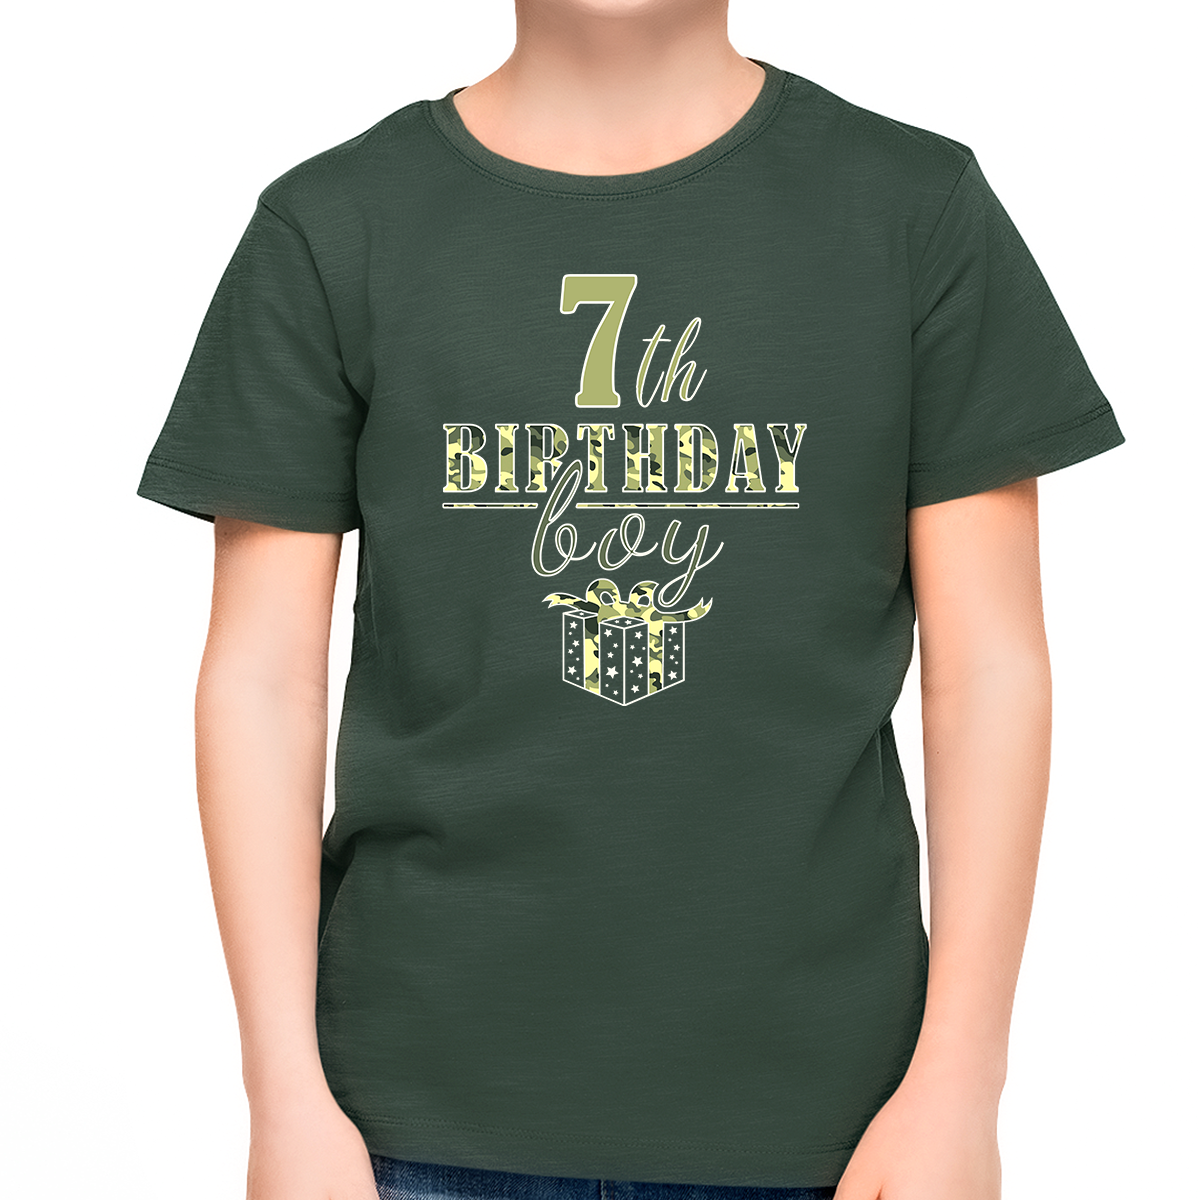 7th Birthday Shirt Boys Birthday Outfit Boy 7 Year Old Boy Birthday Shirt Army Camo Birthday Boy Shirt